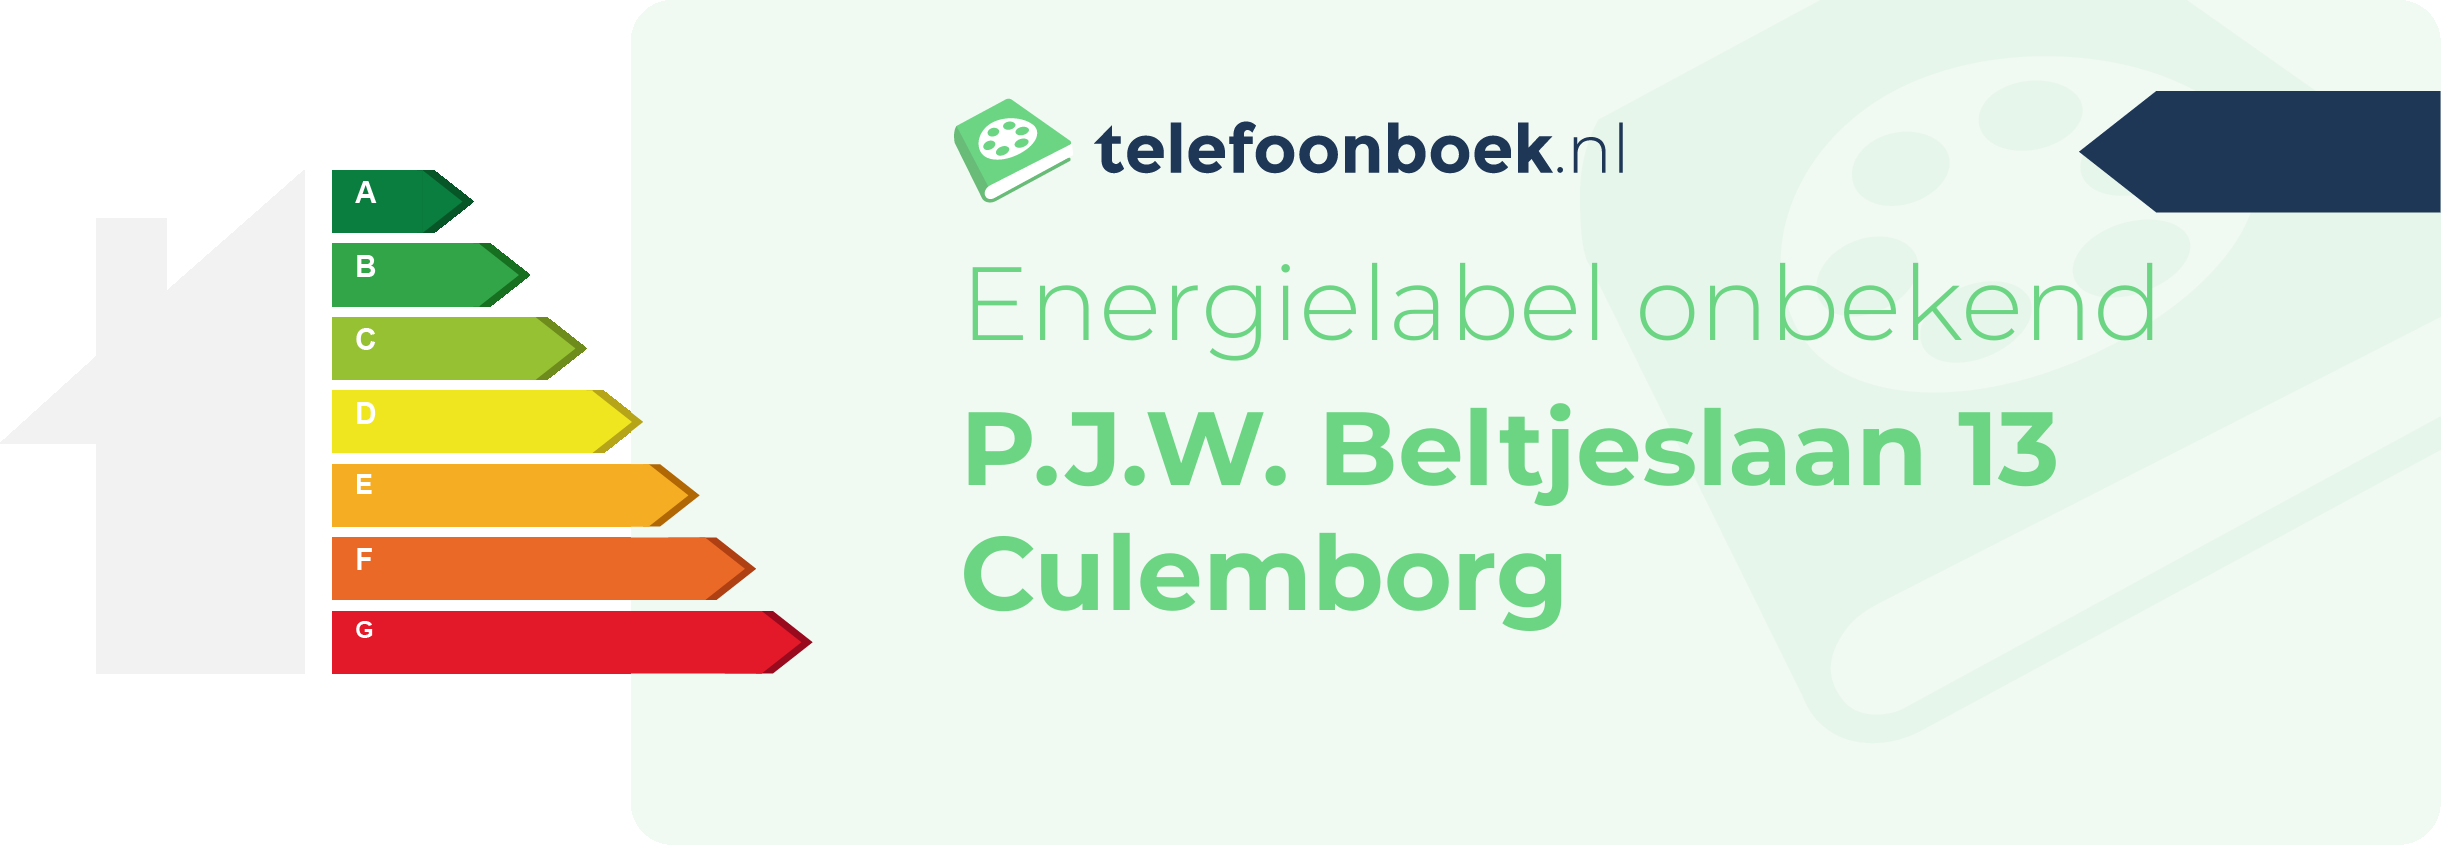 Energielabel P.J.W. Beltjeslaan 13 Culemborg